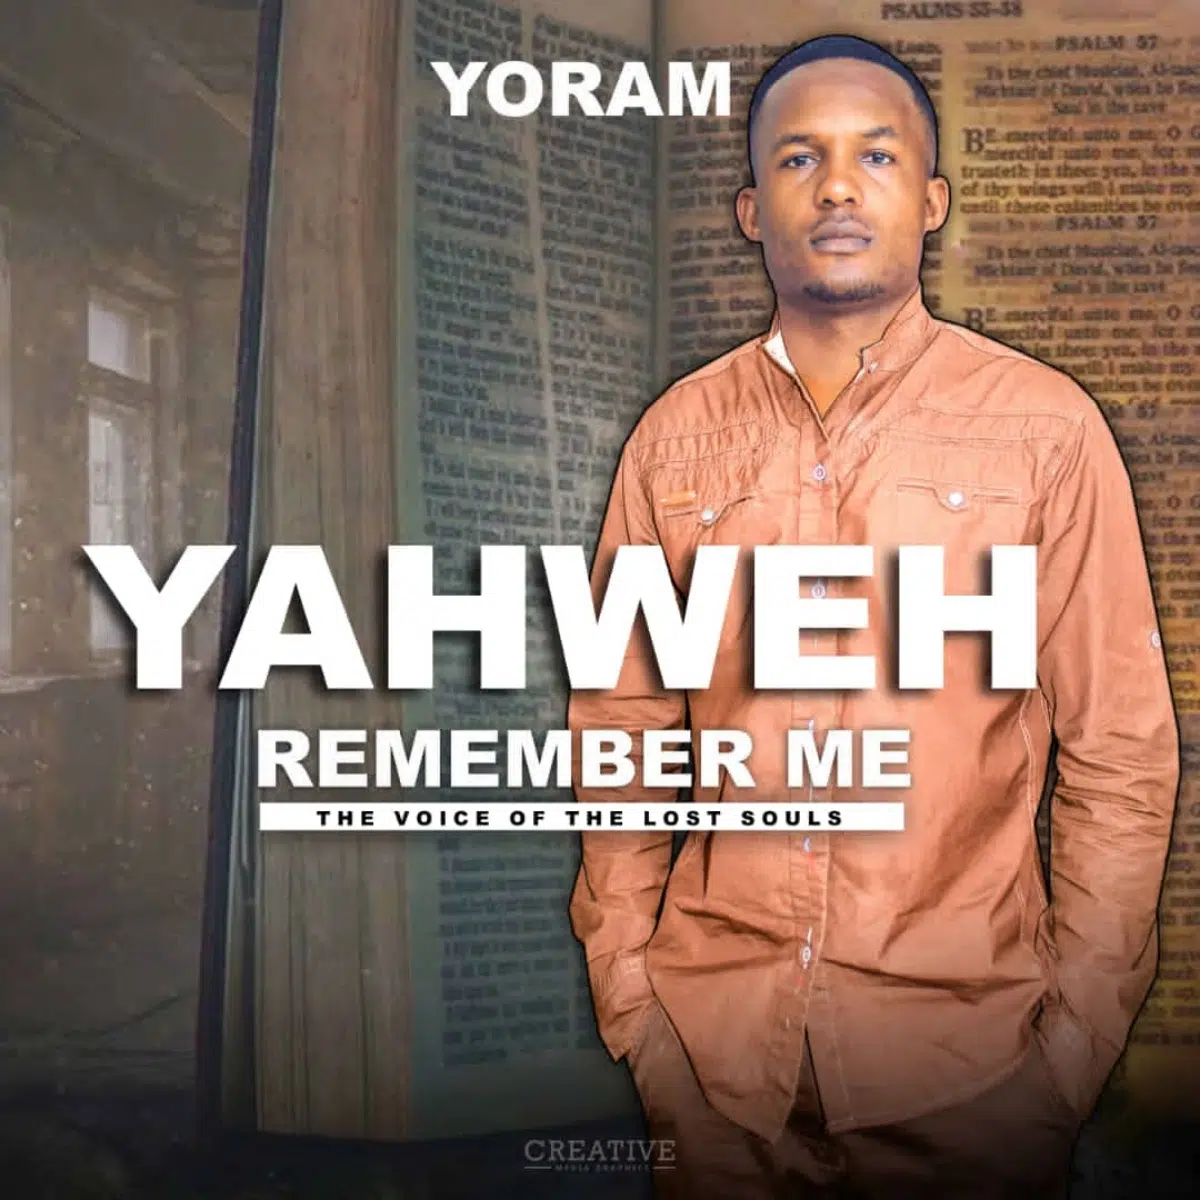 DOWNLOAD: Yoram – “Yahweh Remember Me” Mp3